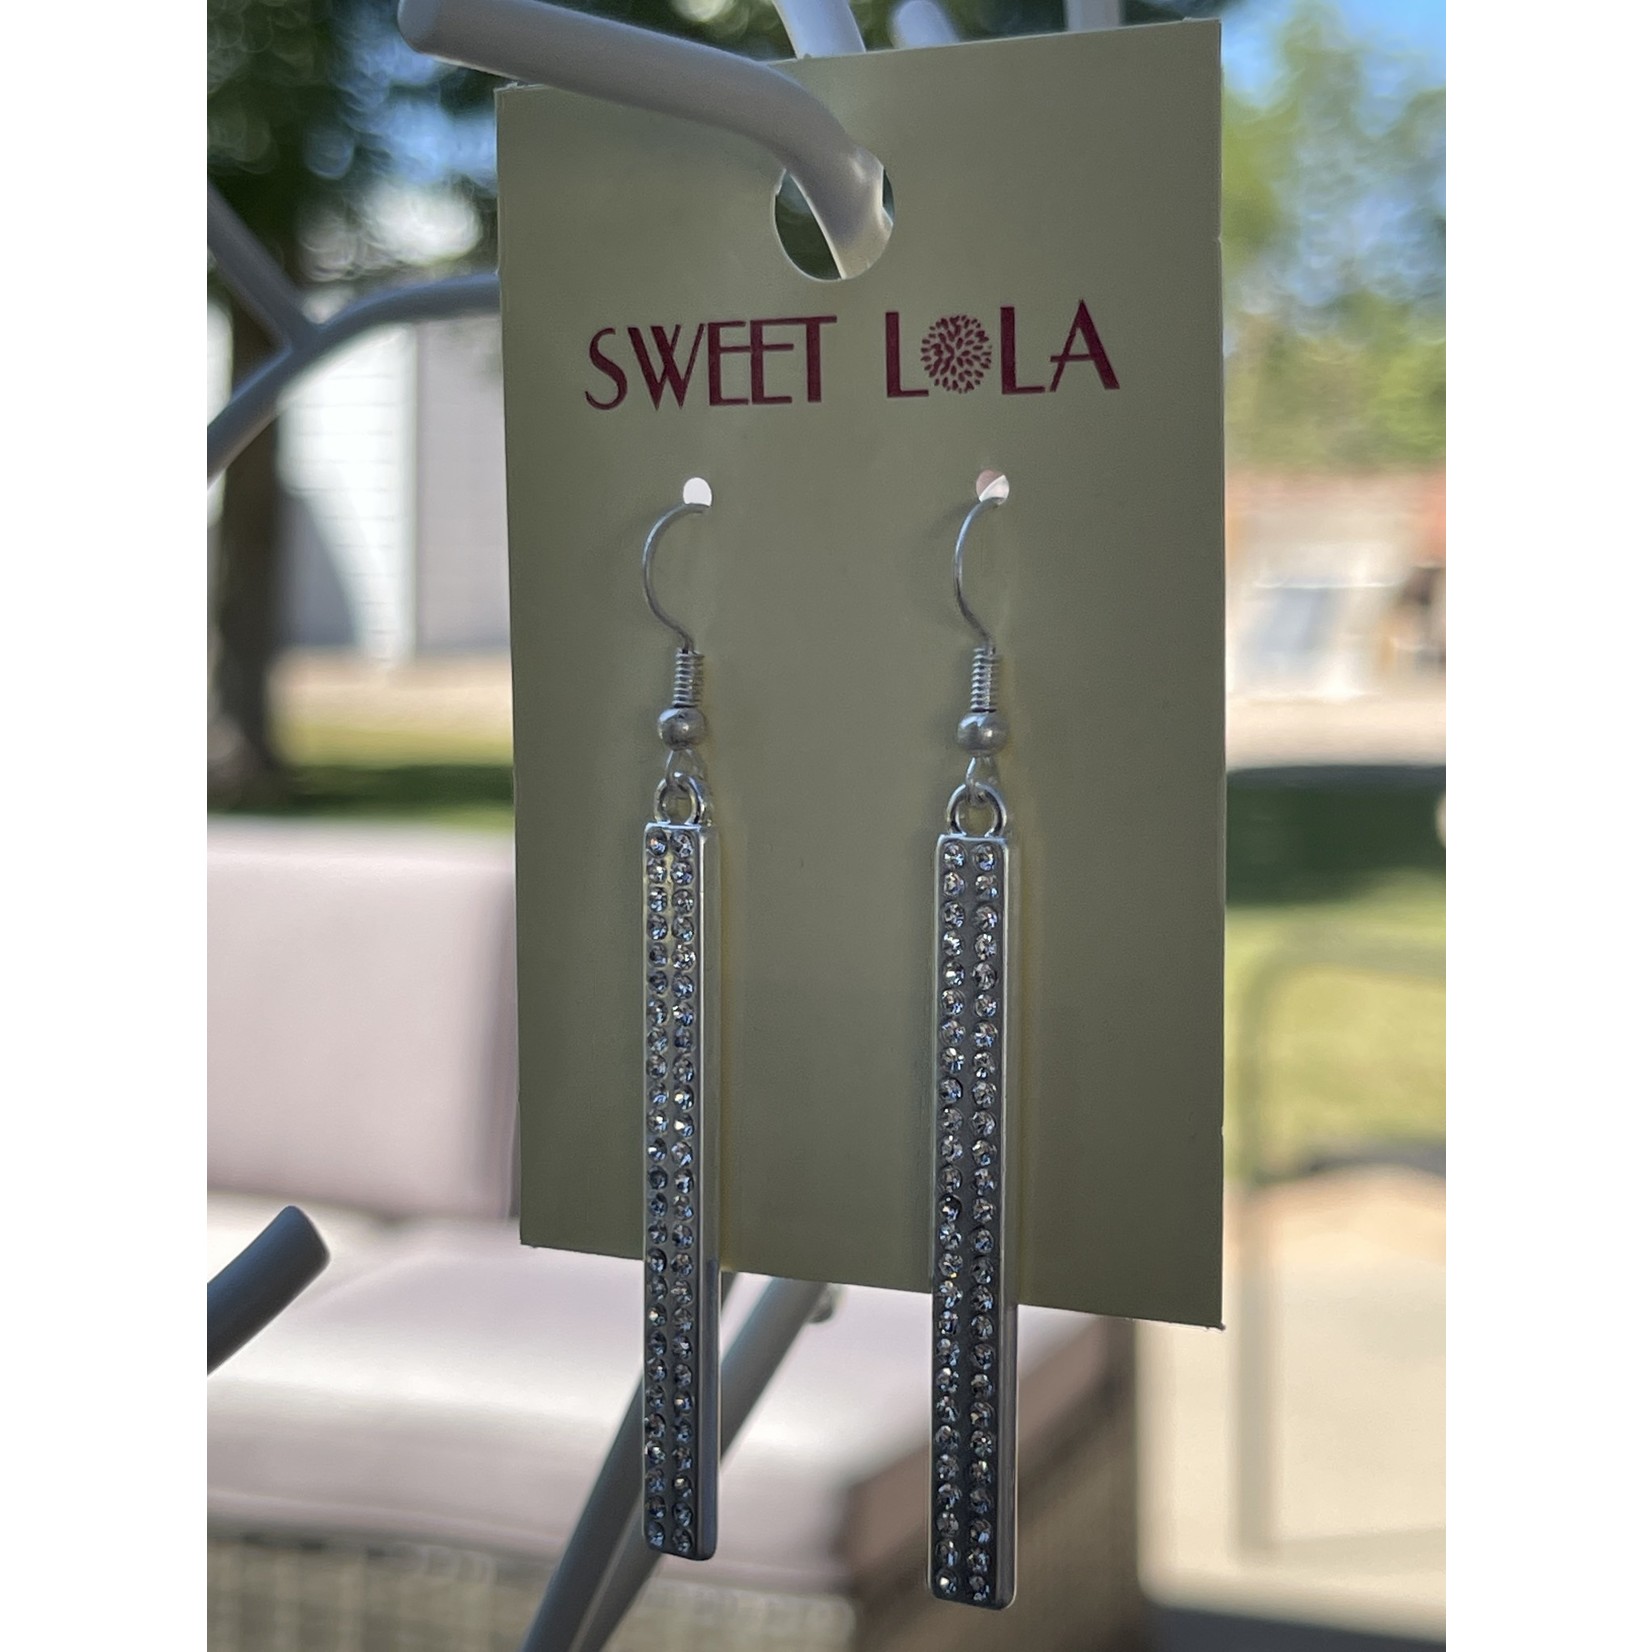 Market Sweet Lola Bling Earrings Silver